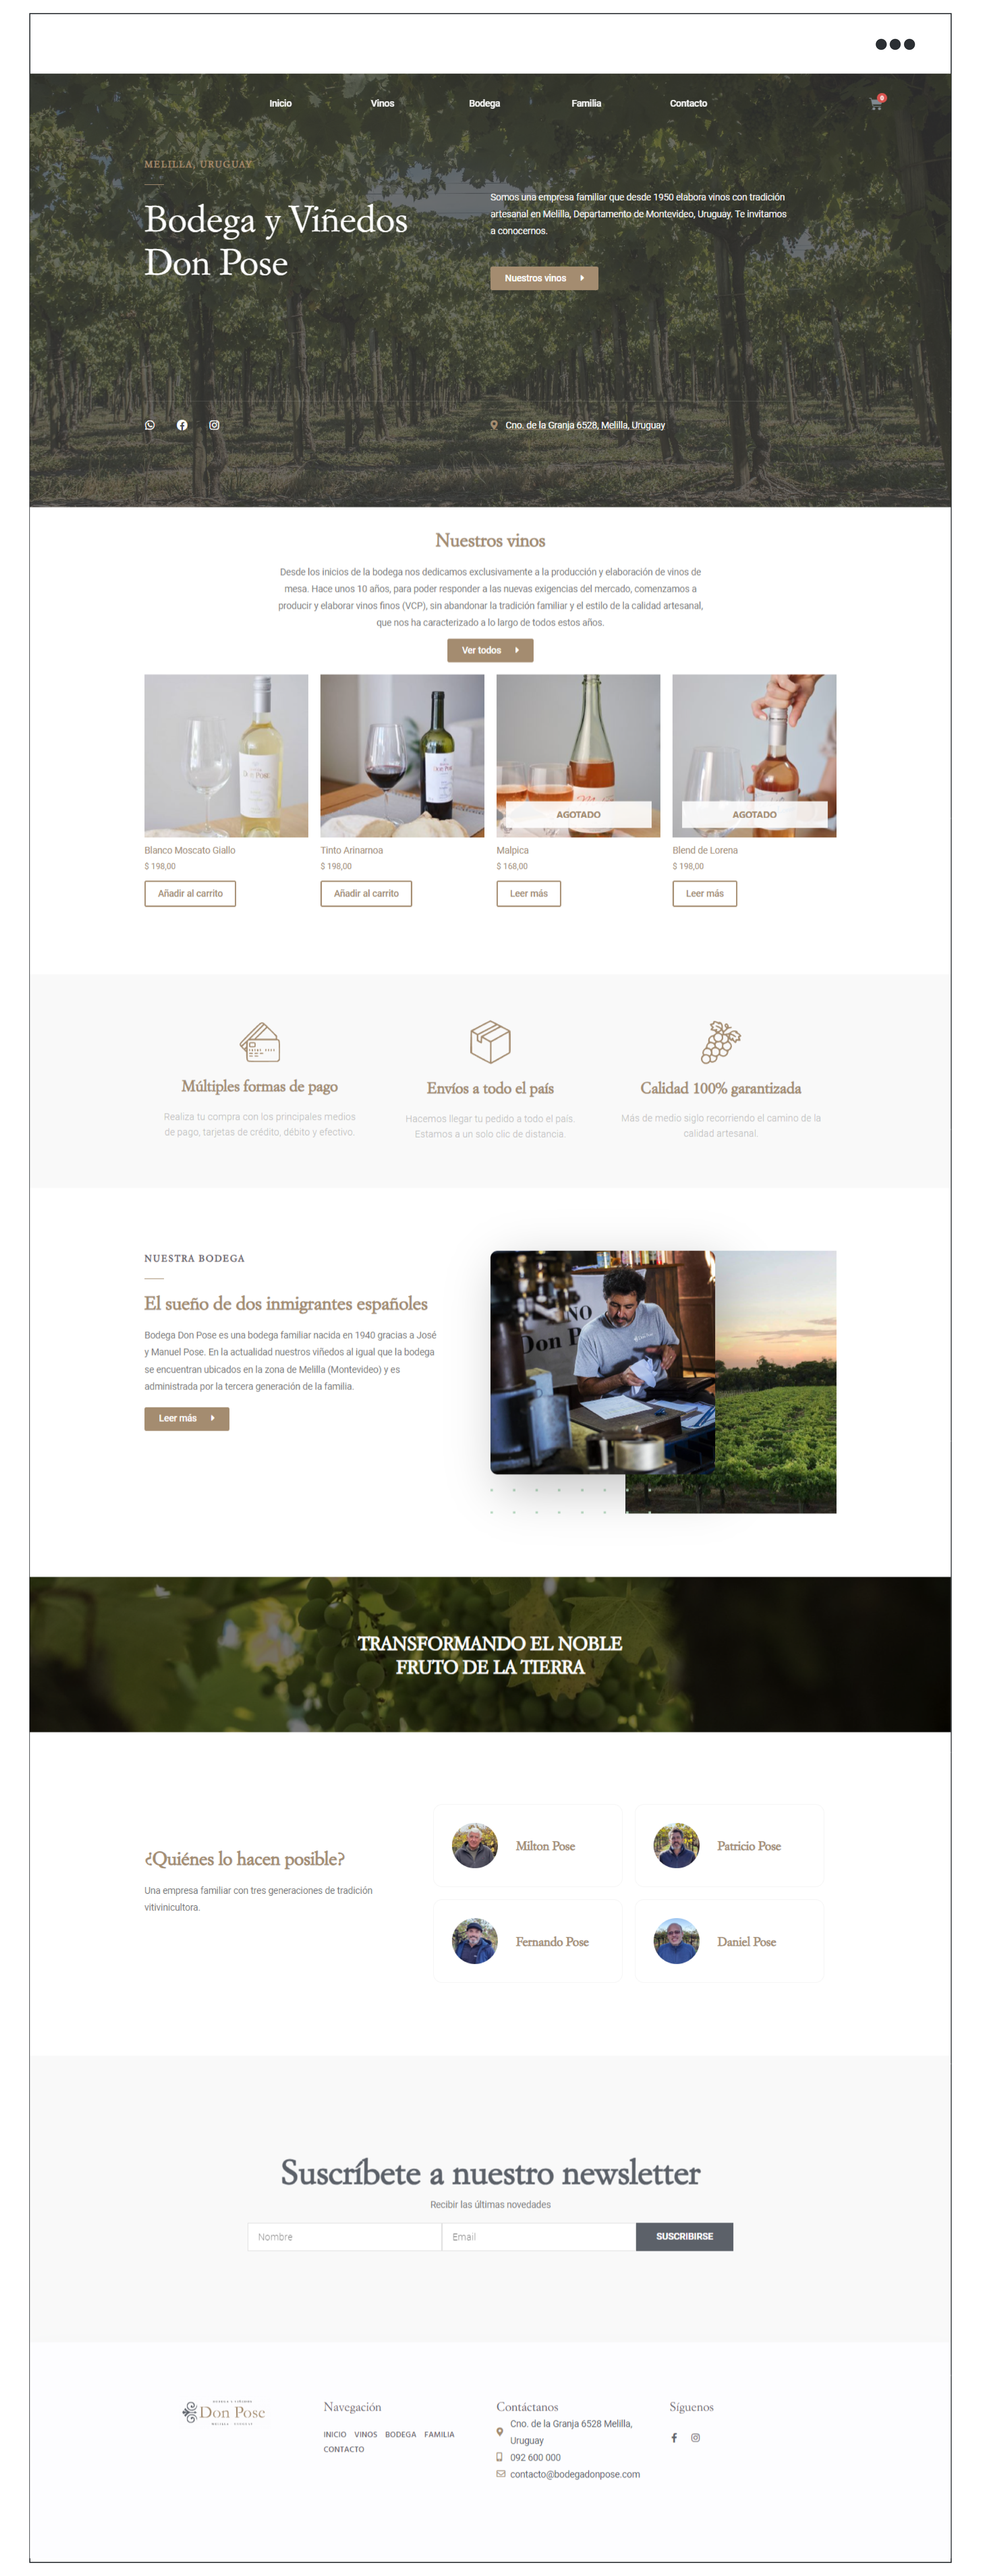 Screen de diseño web con tienda online para negocio de bodega uruguaya